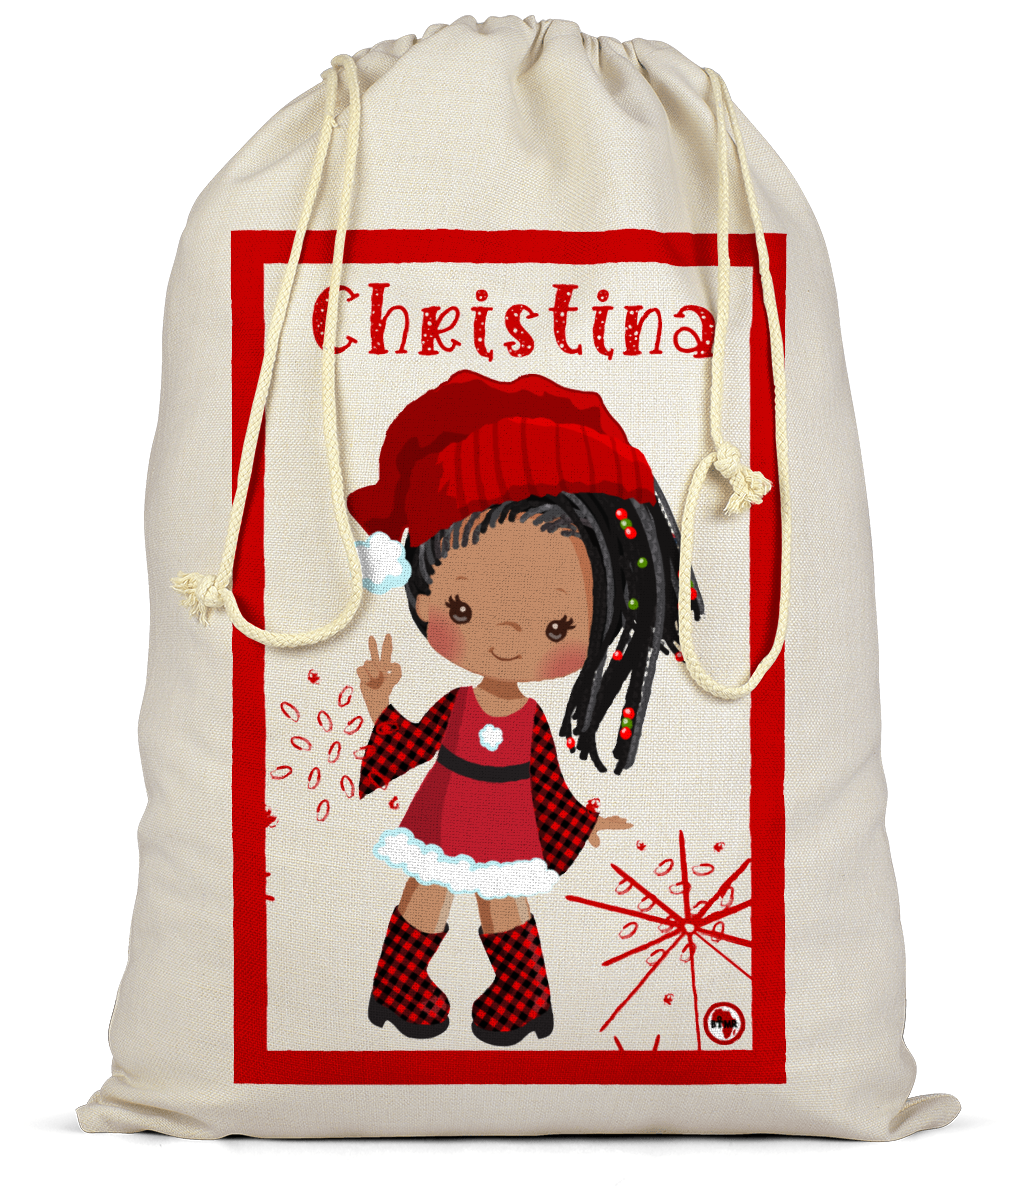 Personalised Christmas Sack | Black Santa's Helper